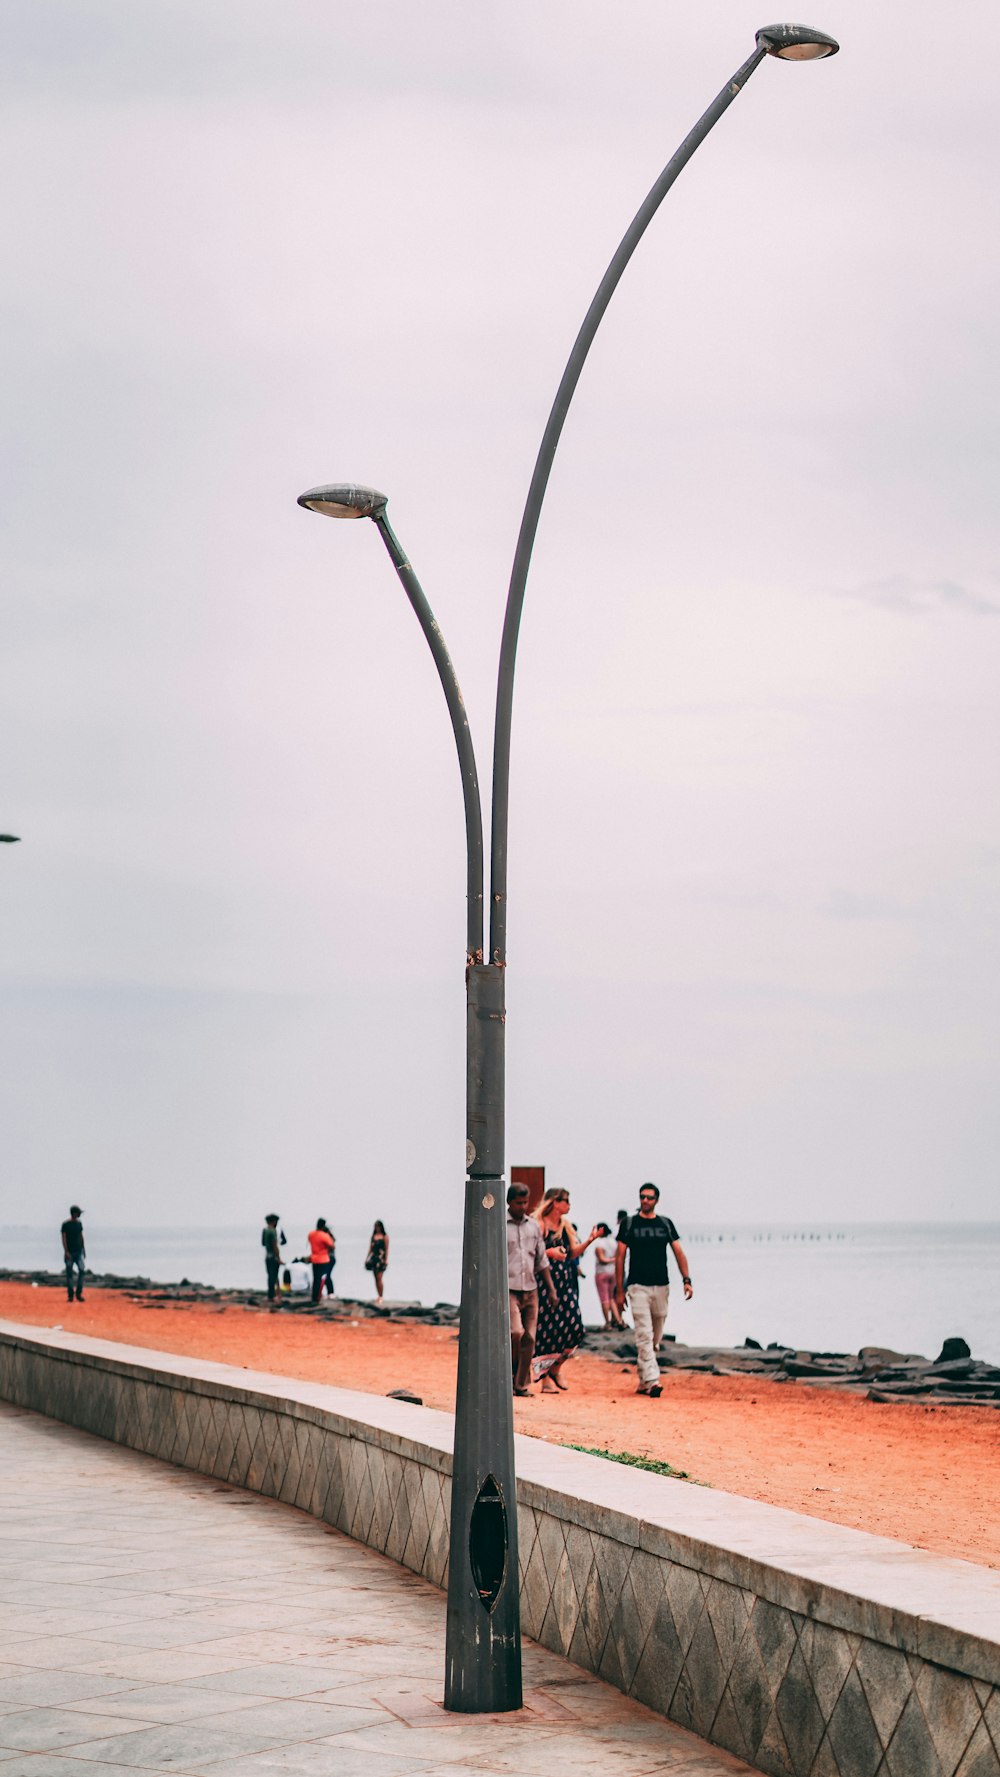 Un gruppo di persone che camminano su una spiaggia vicino a un palo della luce